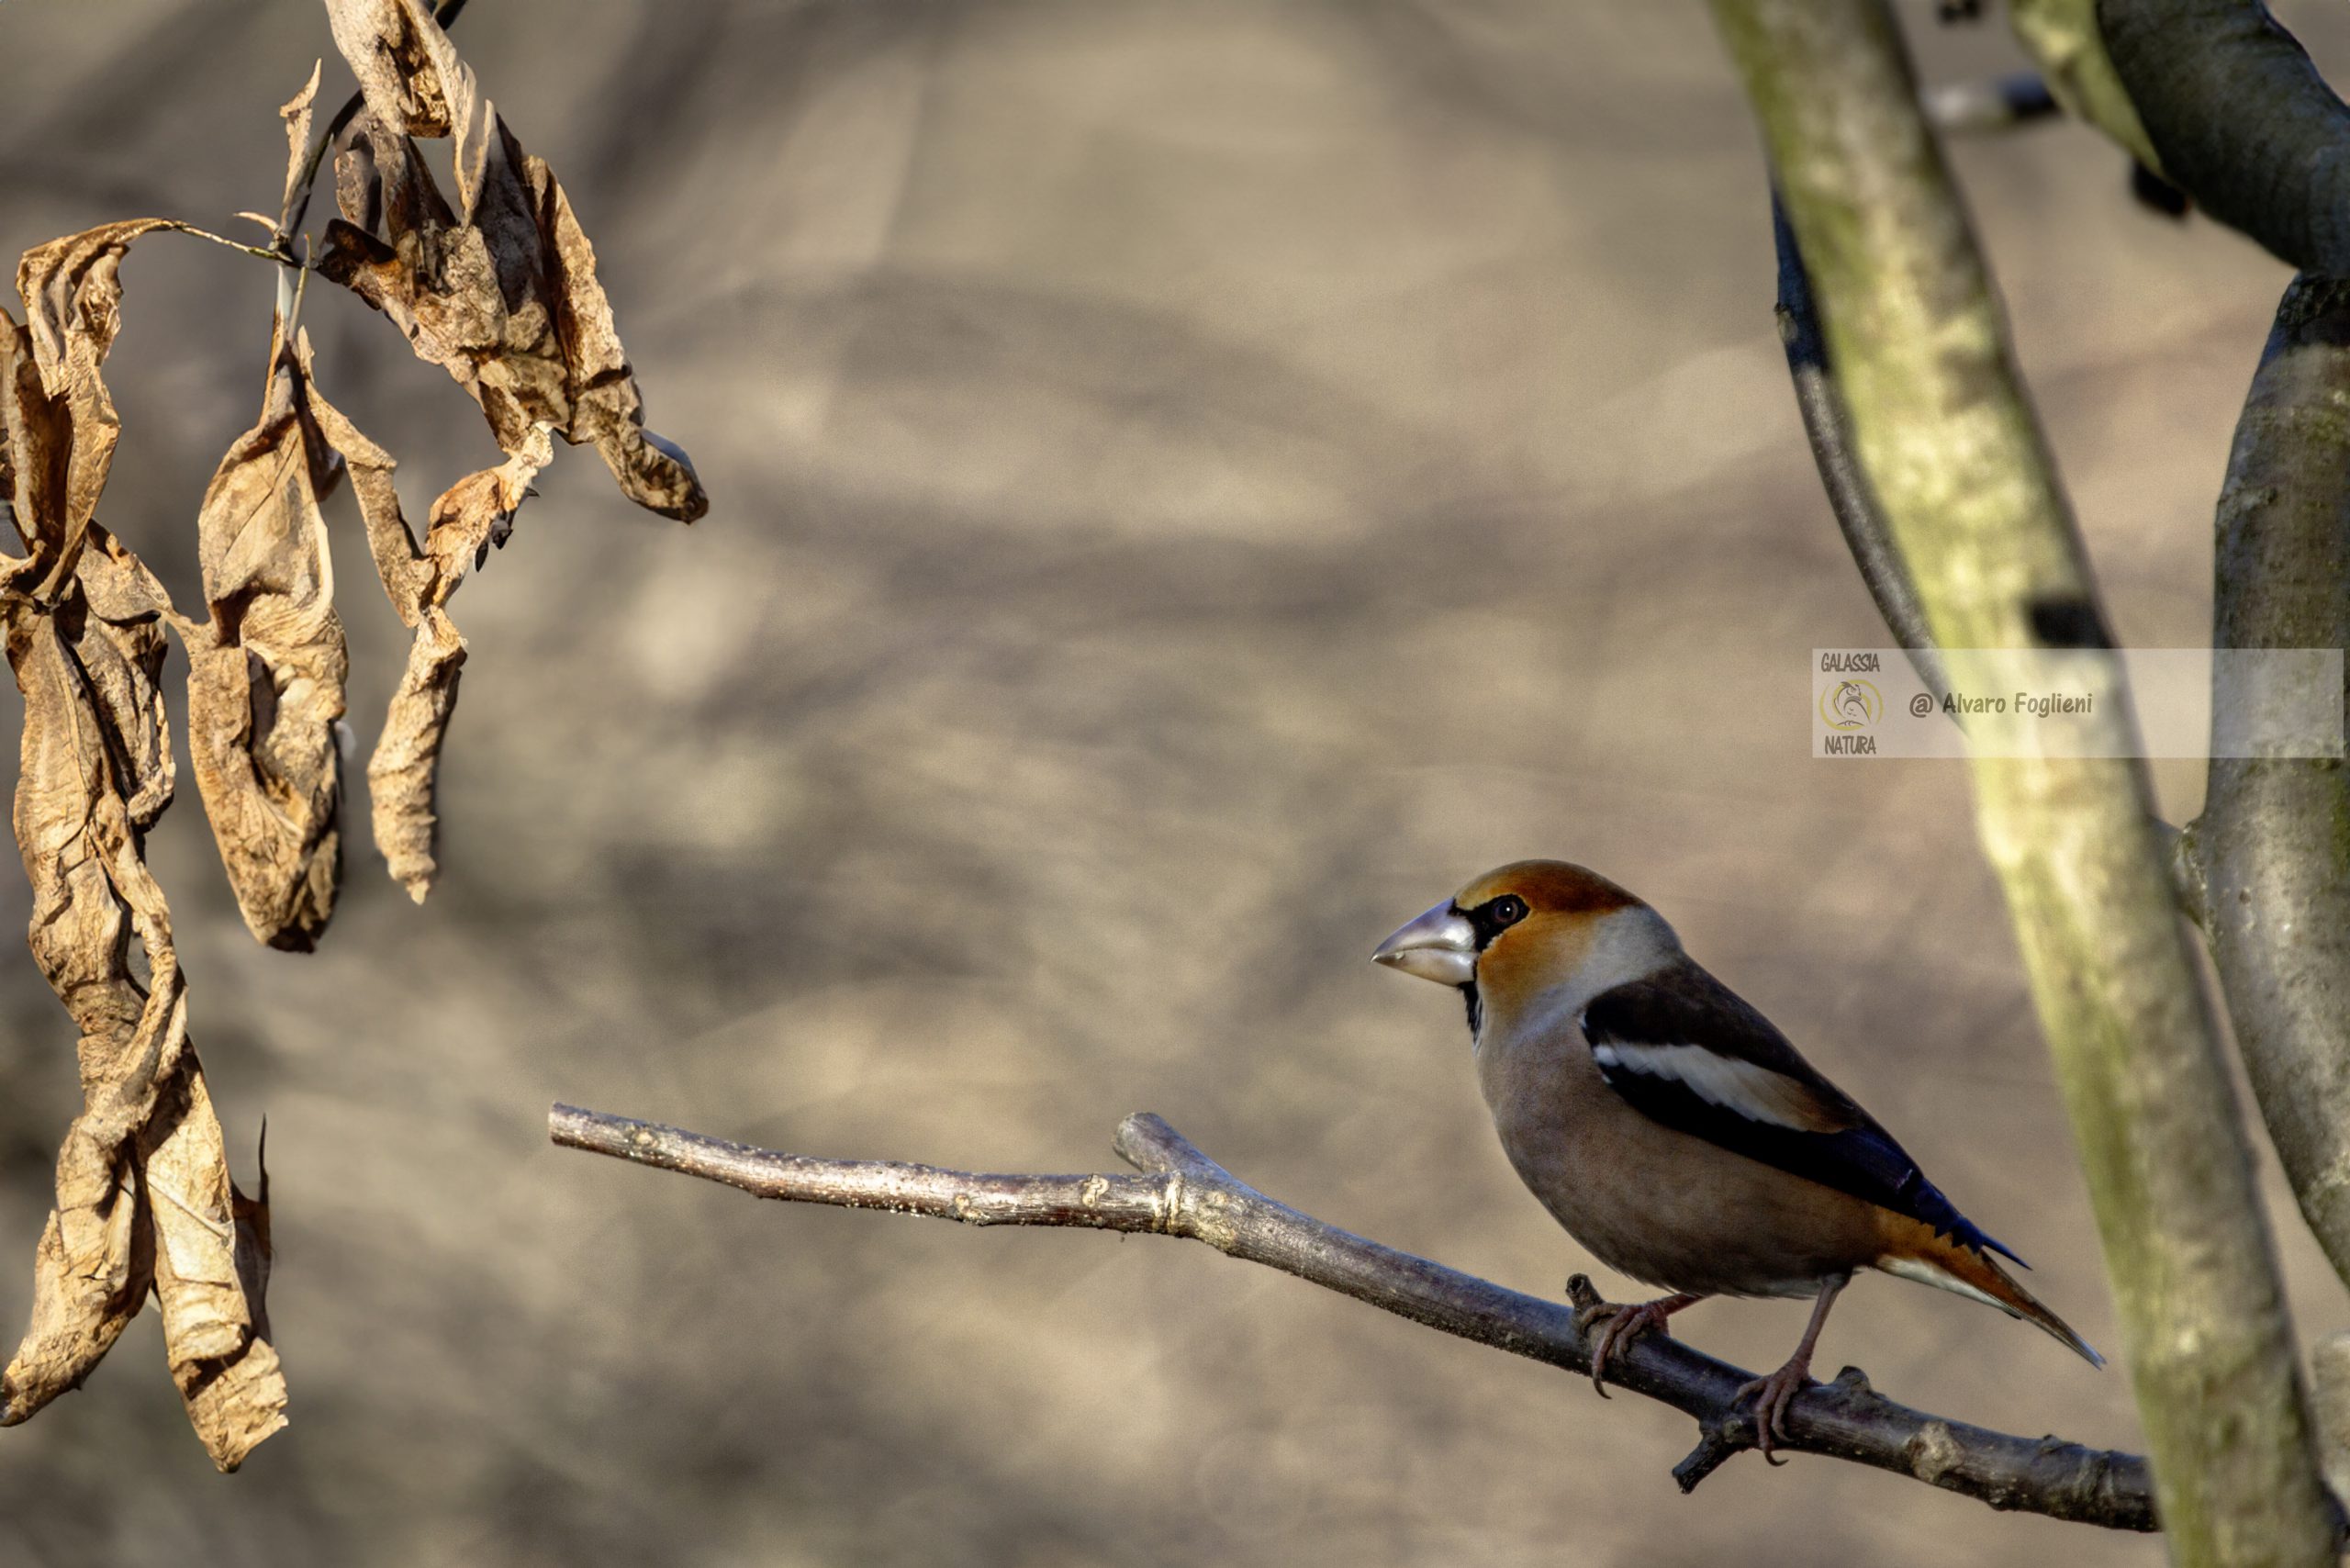 fotografare gli uccelli selvatici richiede pazienza, abilità e una profonda comprensione del loro comportamento e habitat.